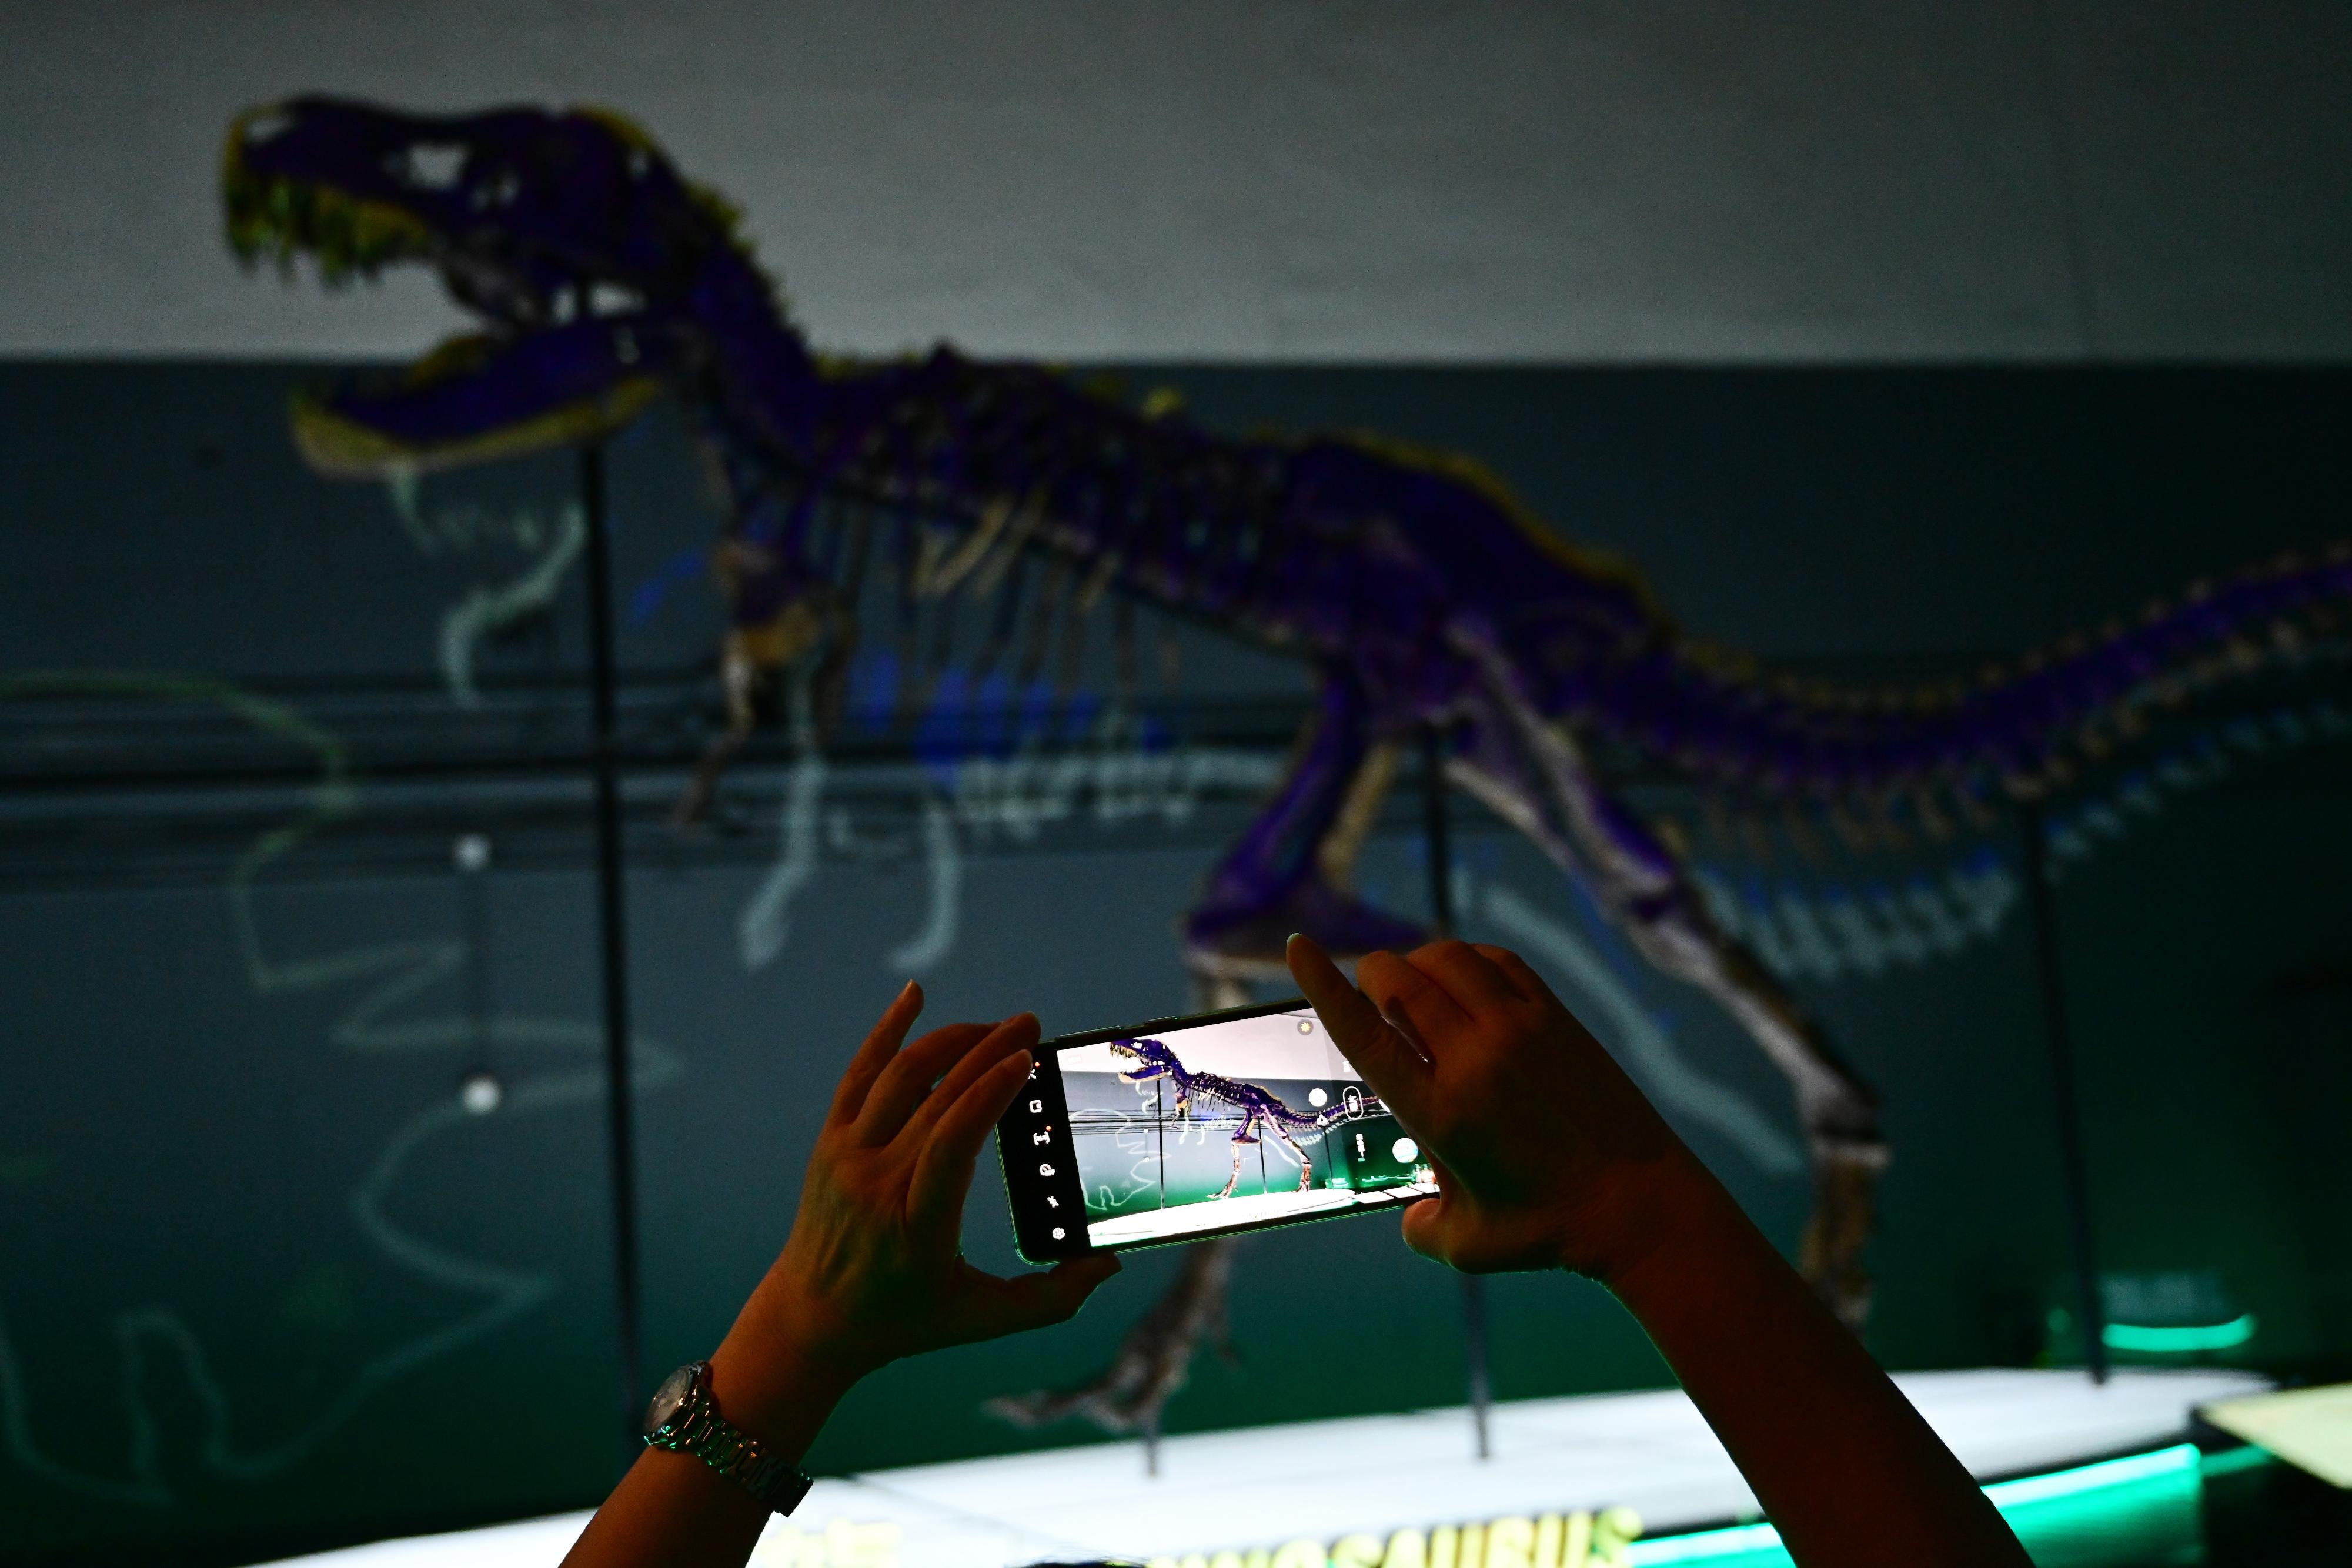 香港科學館舉辦的免費大型恐龍展覽「香港賽馬會呈獻系列：八大‧尋龍記」開展至今深受市民歡迎。香港科學館將延長展期至明年二月二十二日。圖示參觀者拍攝展覽廳內極受歡迎的暴龍化石骨架。